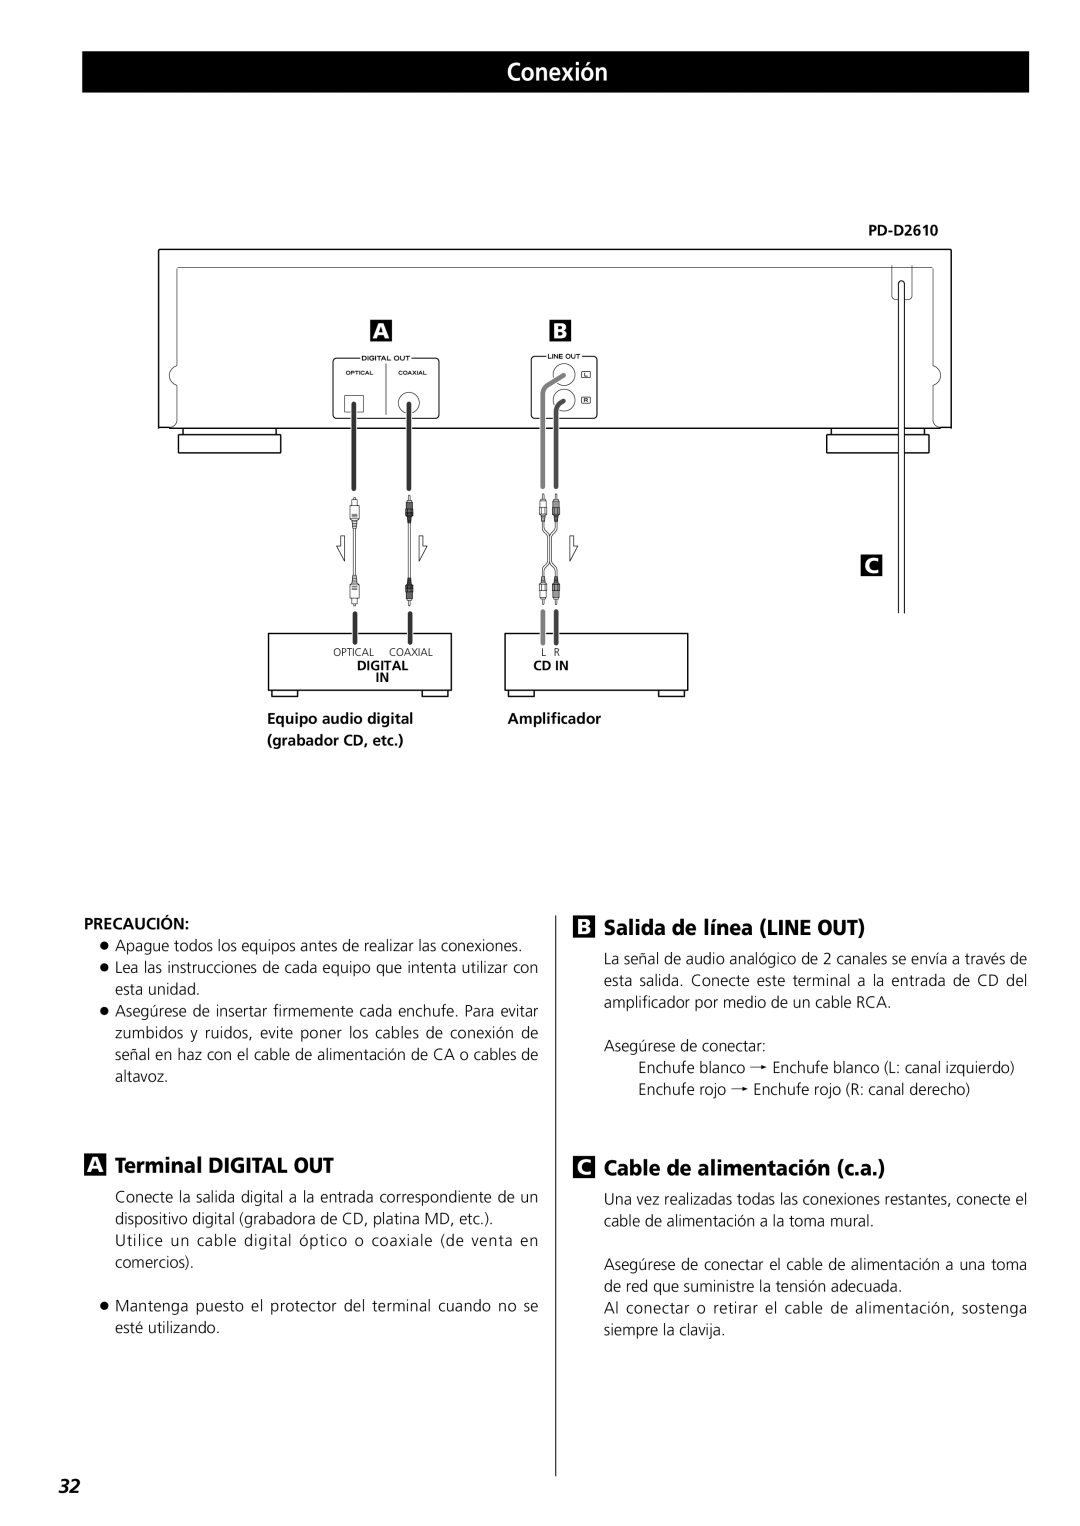 Teac PD-D2610 owner manual Conexión, ATerminal DIGITAL OUT, BSalida de línea LINE OUT, CCable de alimentación c.a 